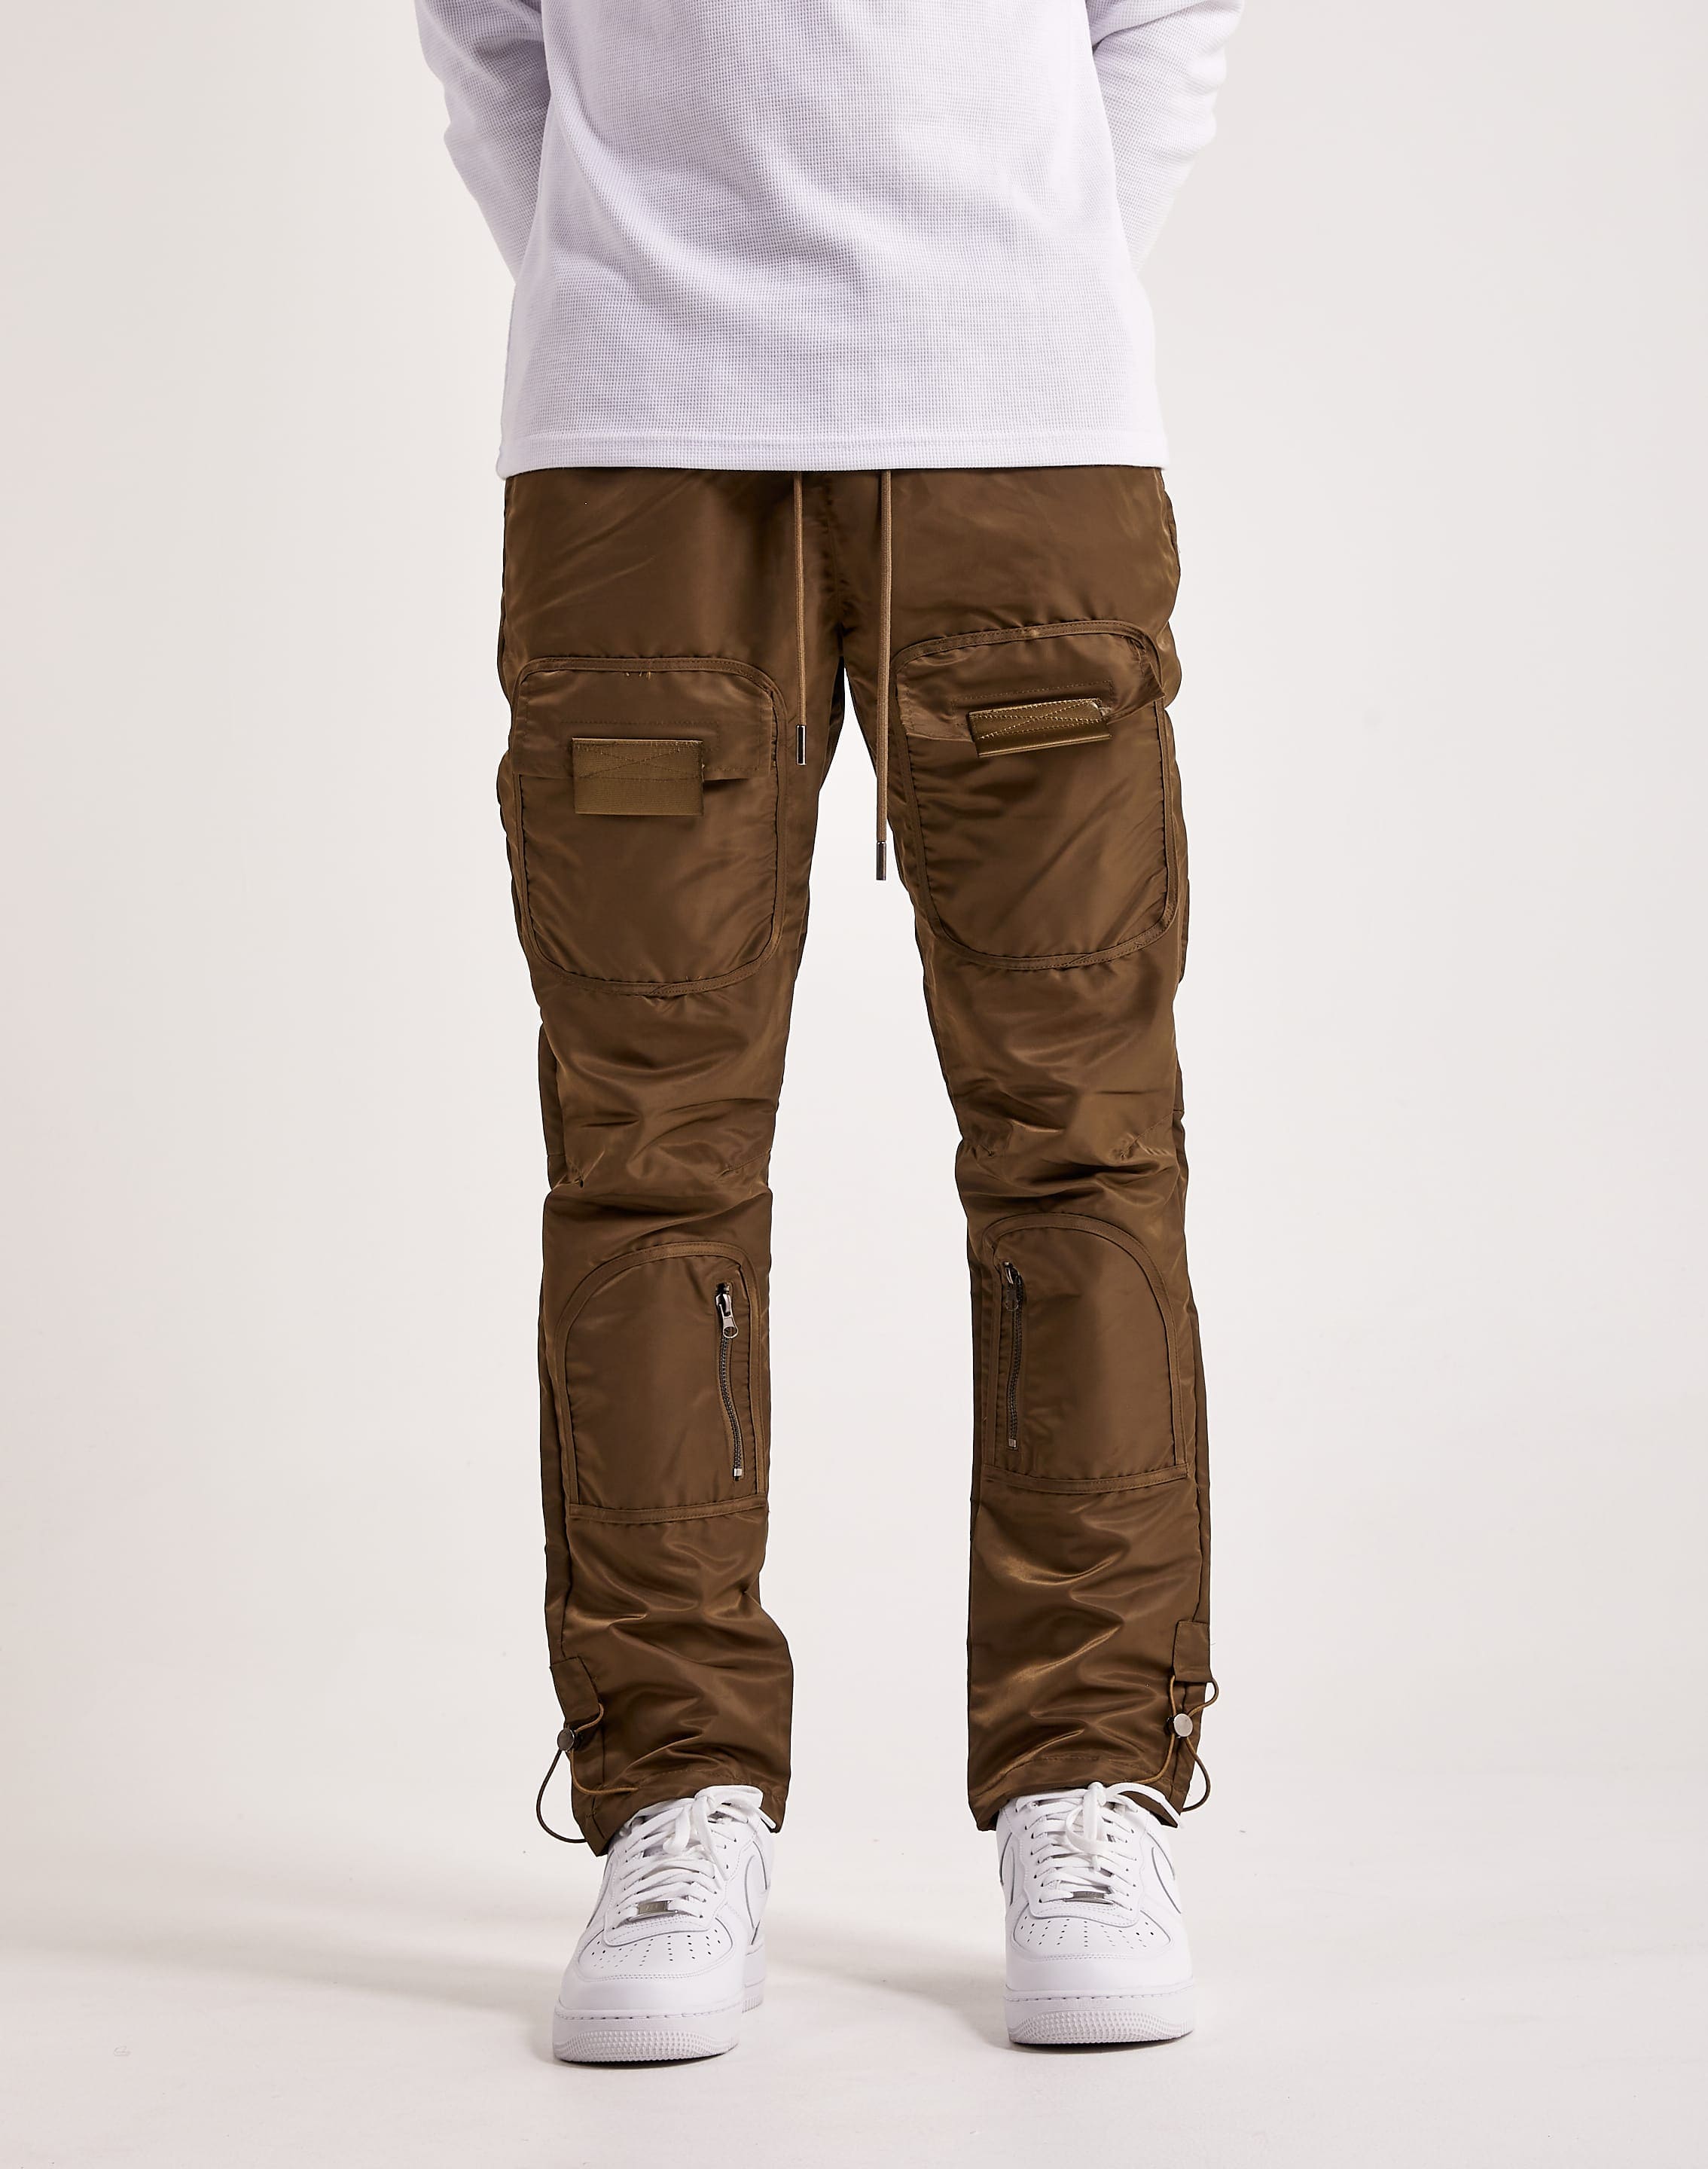 01.ALGO Men's Straight Leg Slate Grey Nylon Cargo Pants Size 38 x 32 | eBay